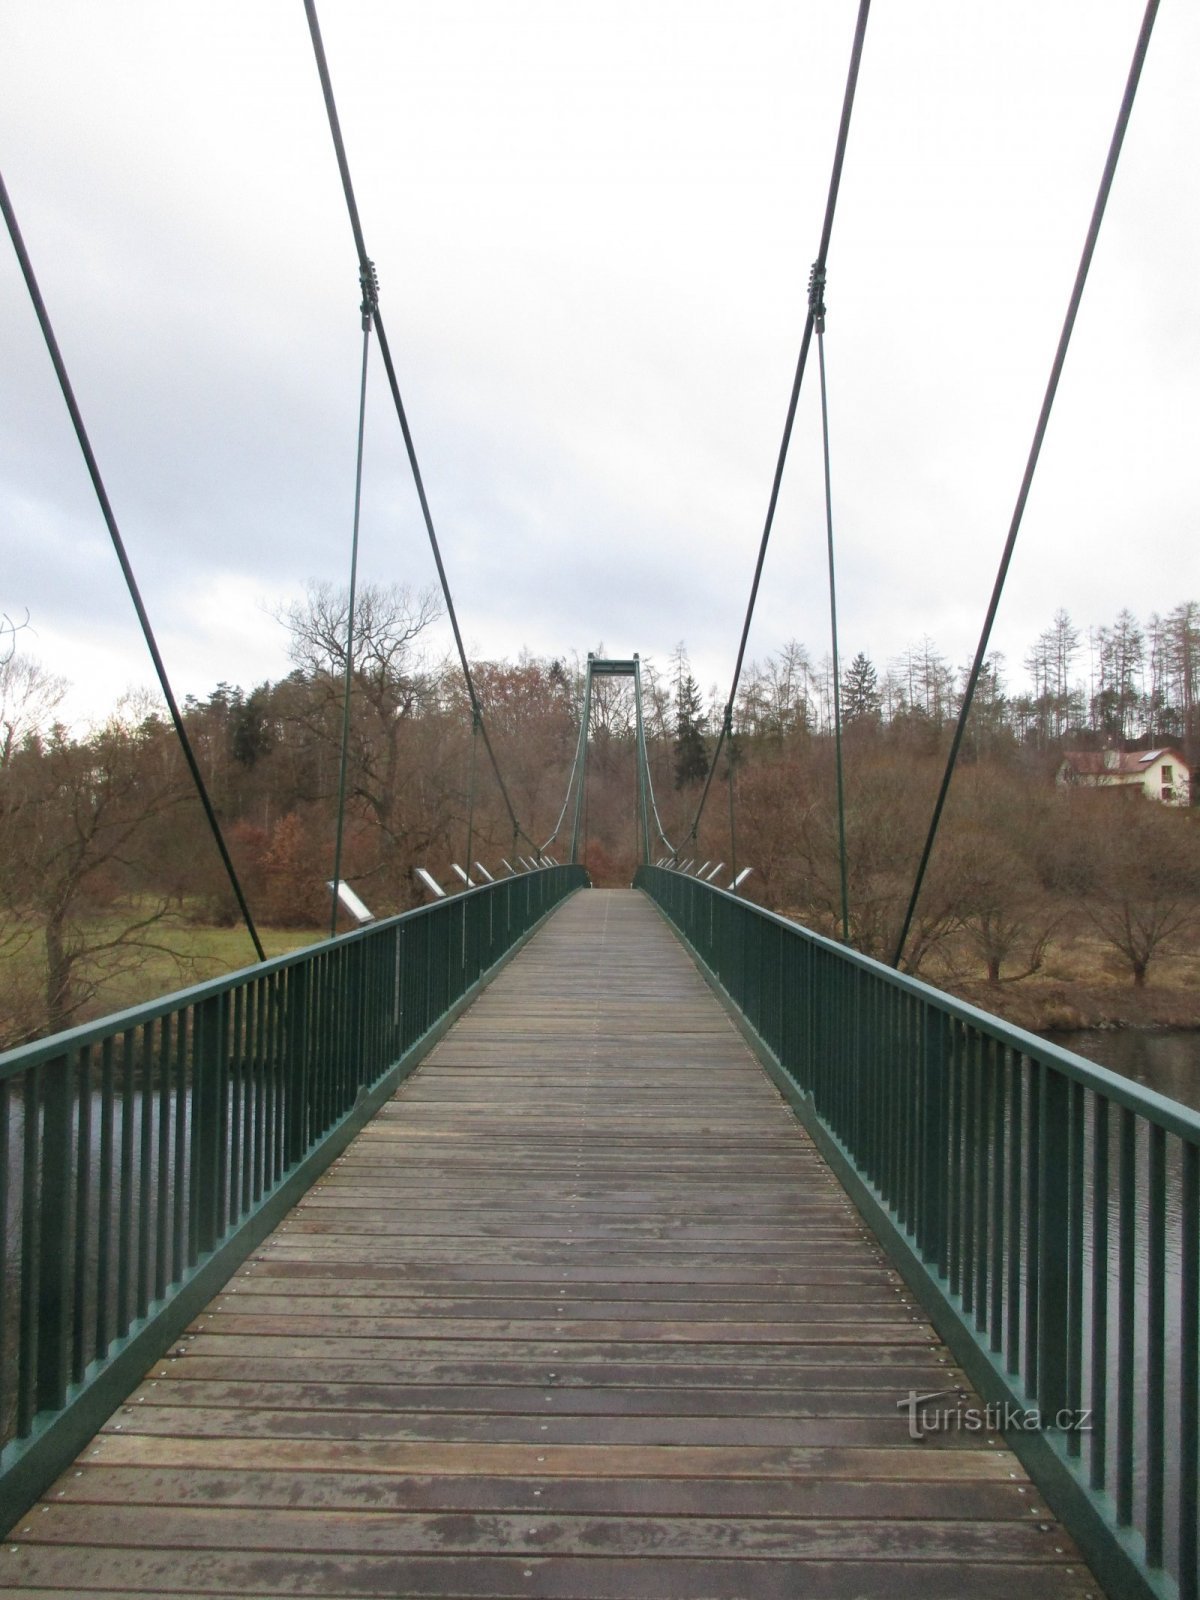 footbridge over Berounka